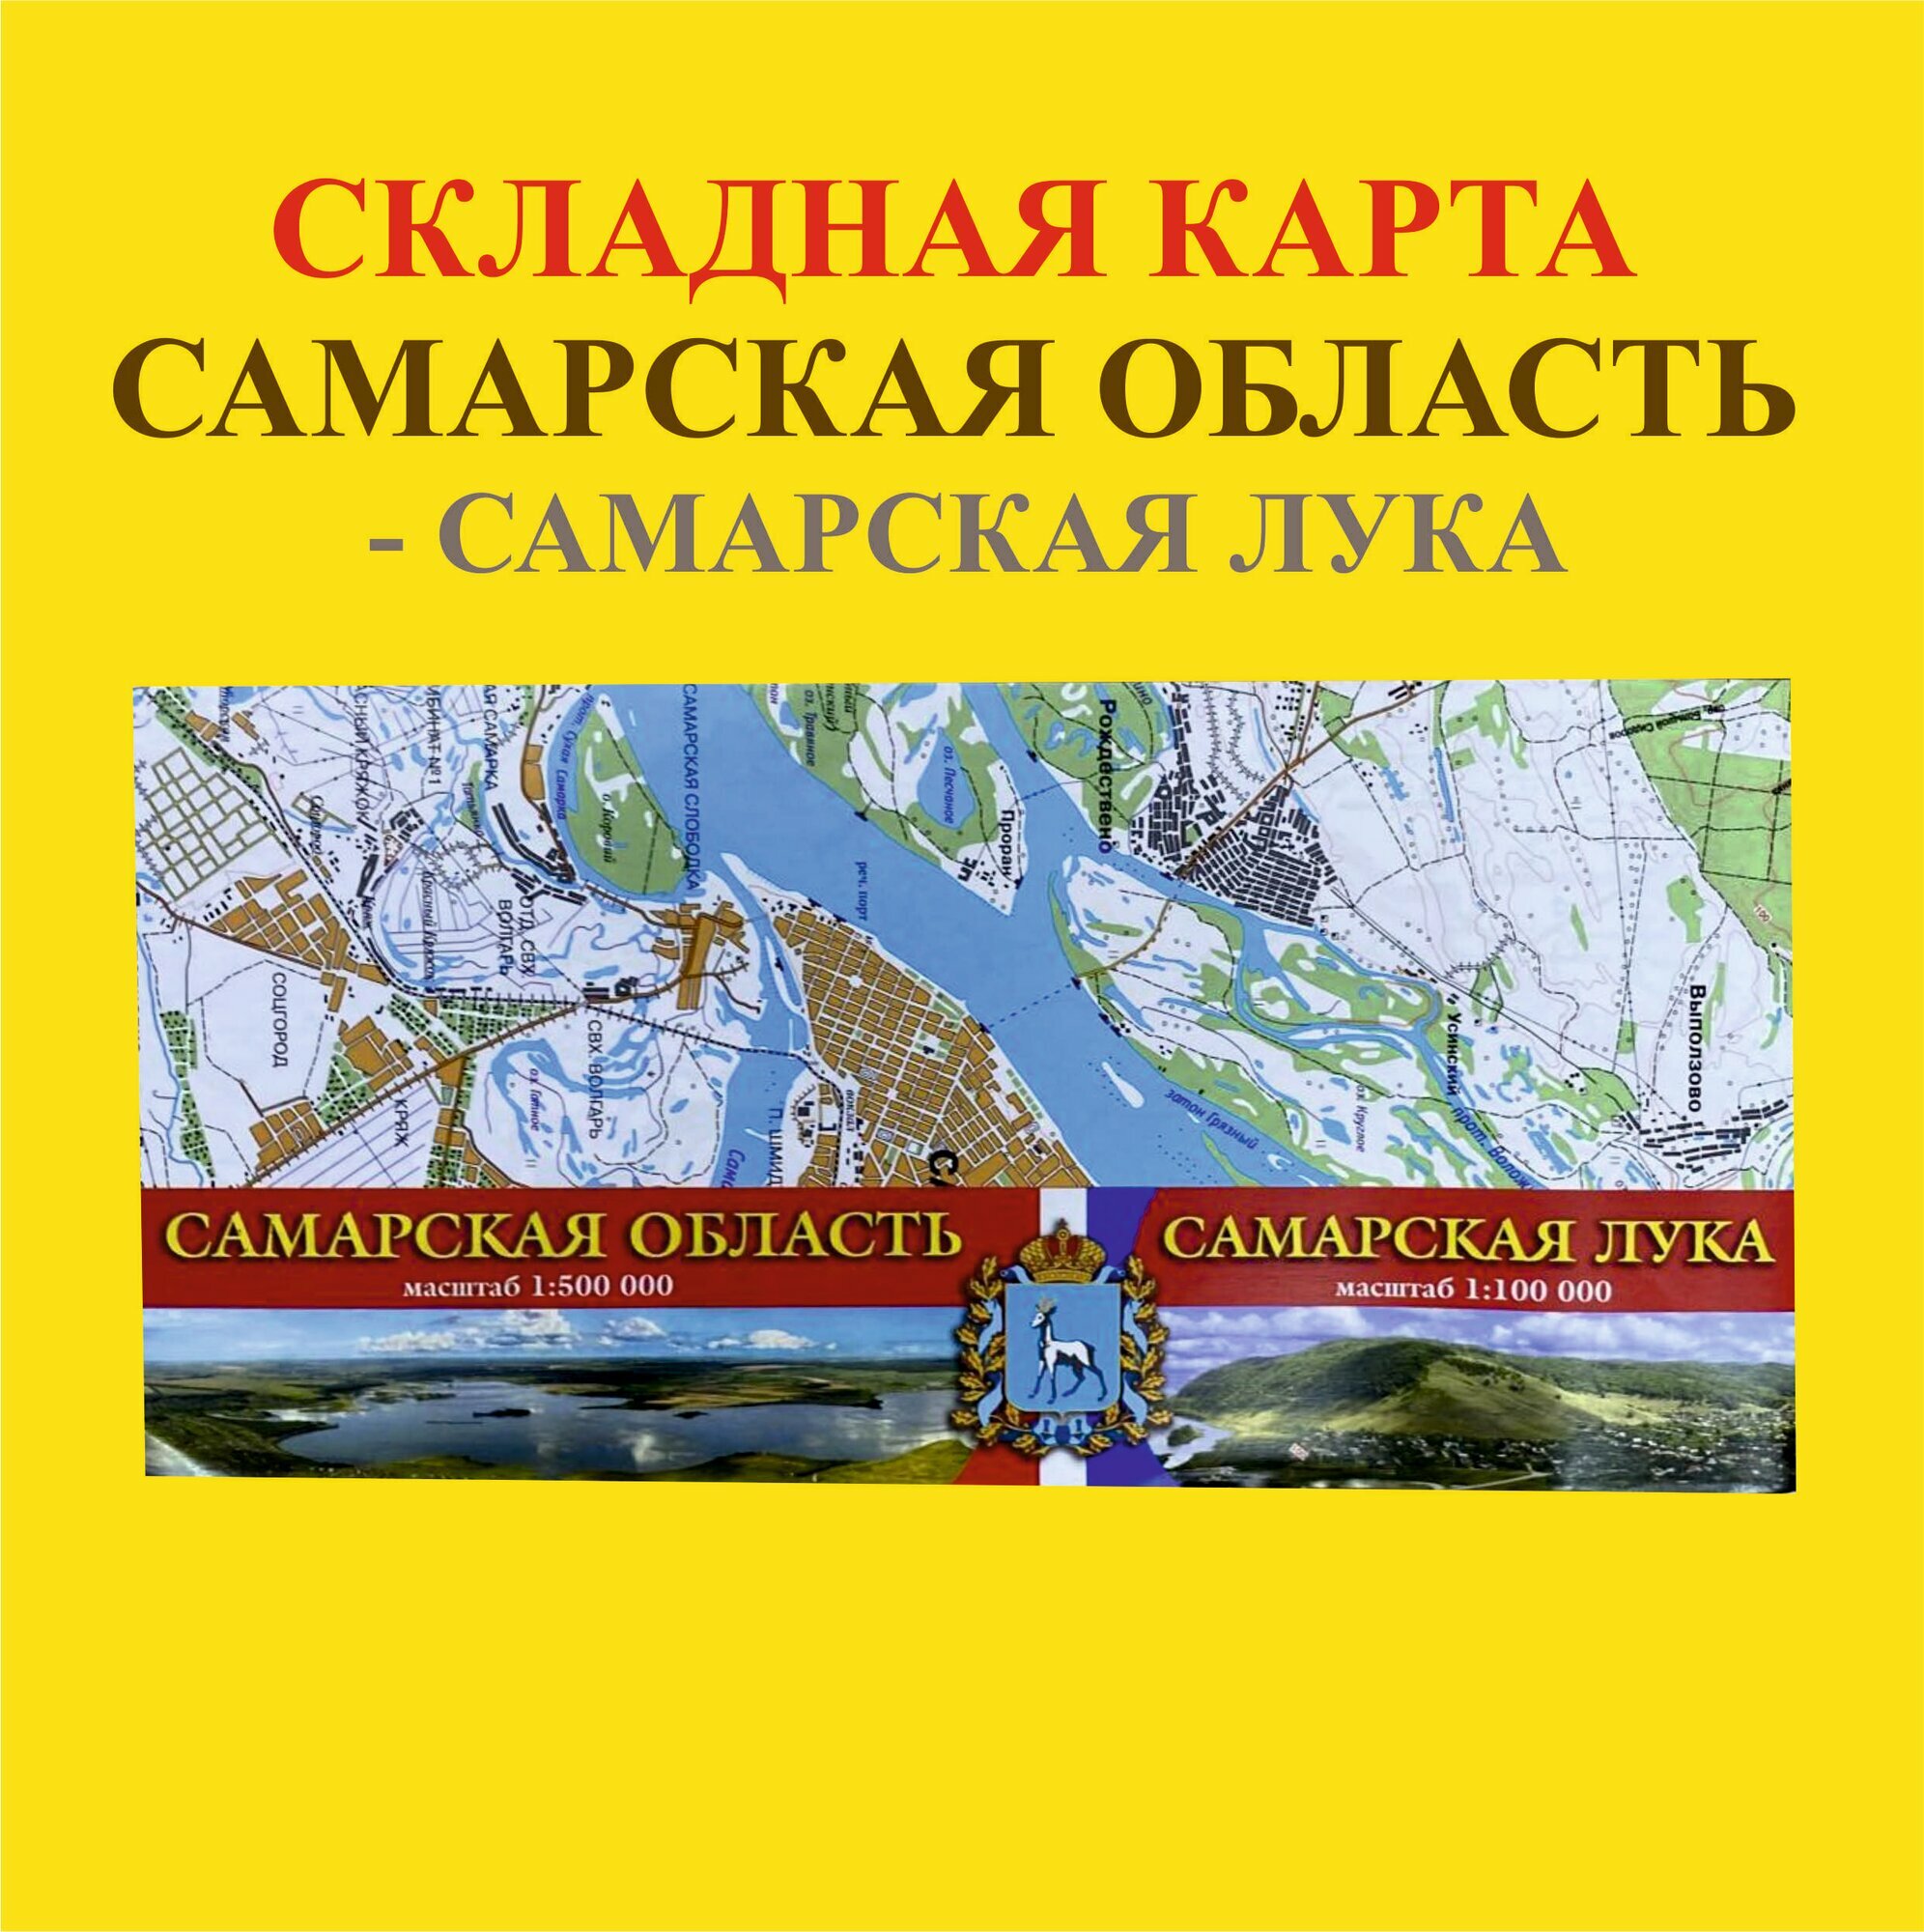 Складная карта Самарская область-Самарская лука